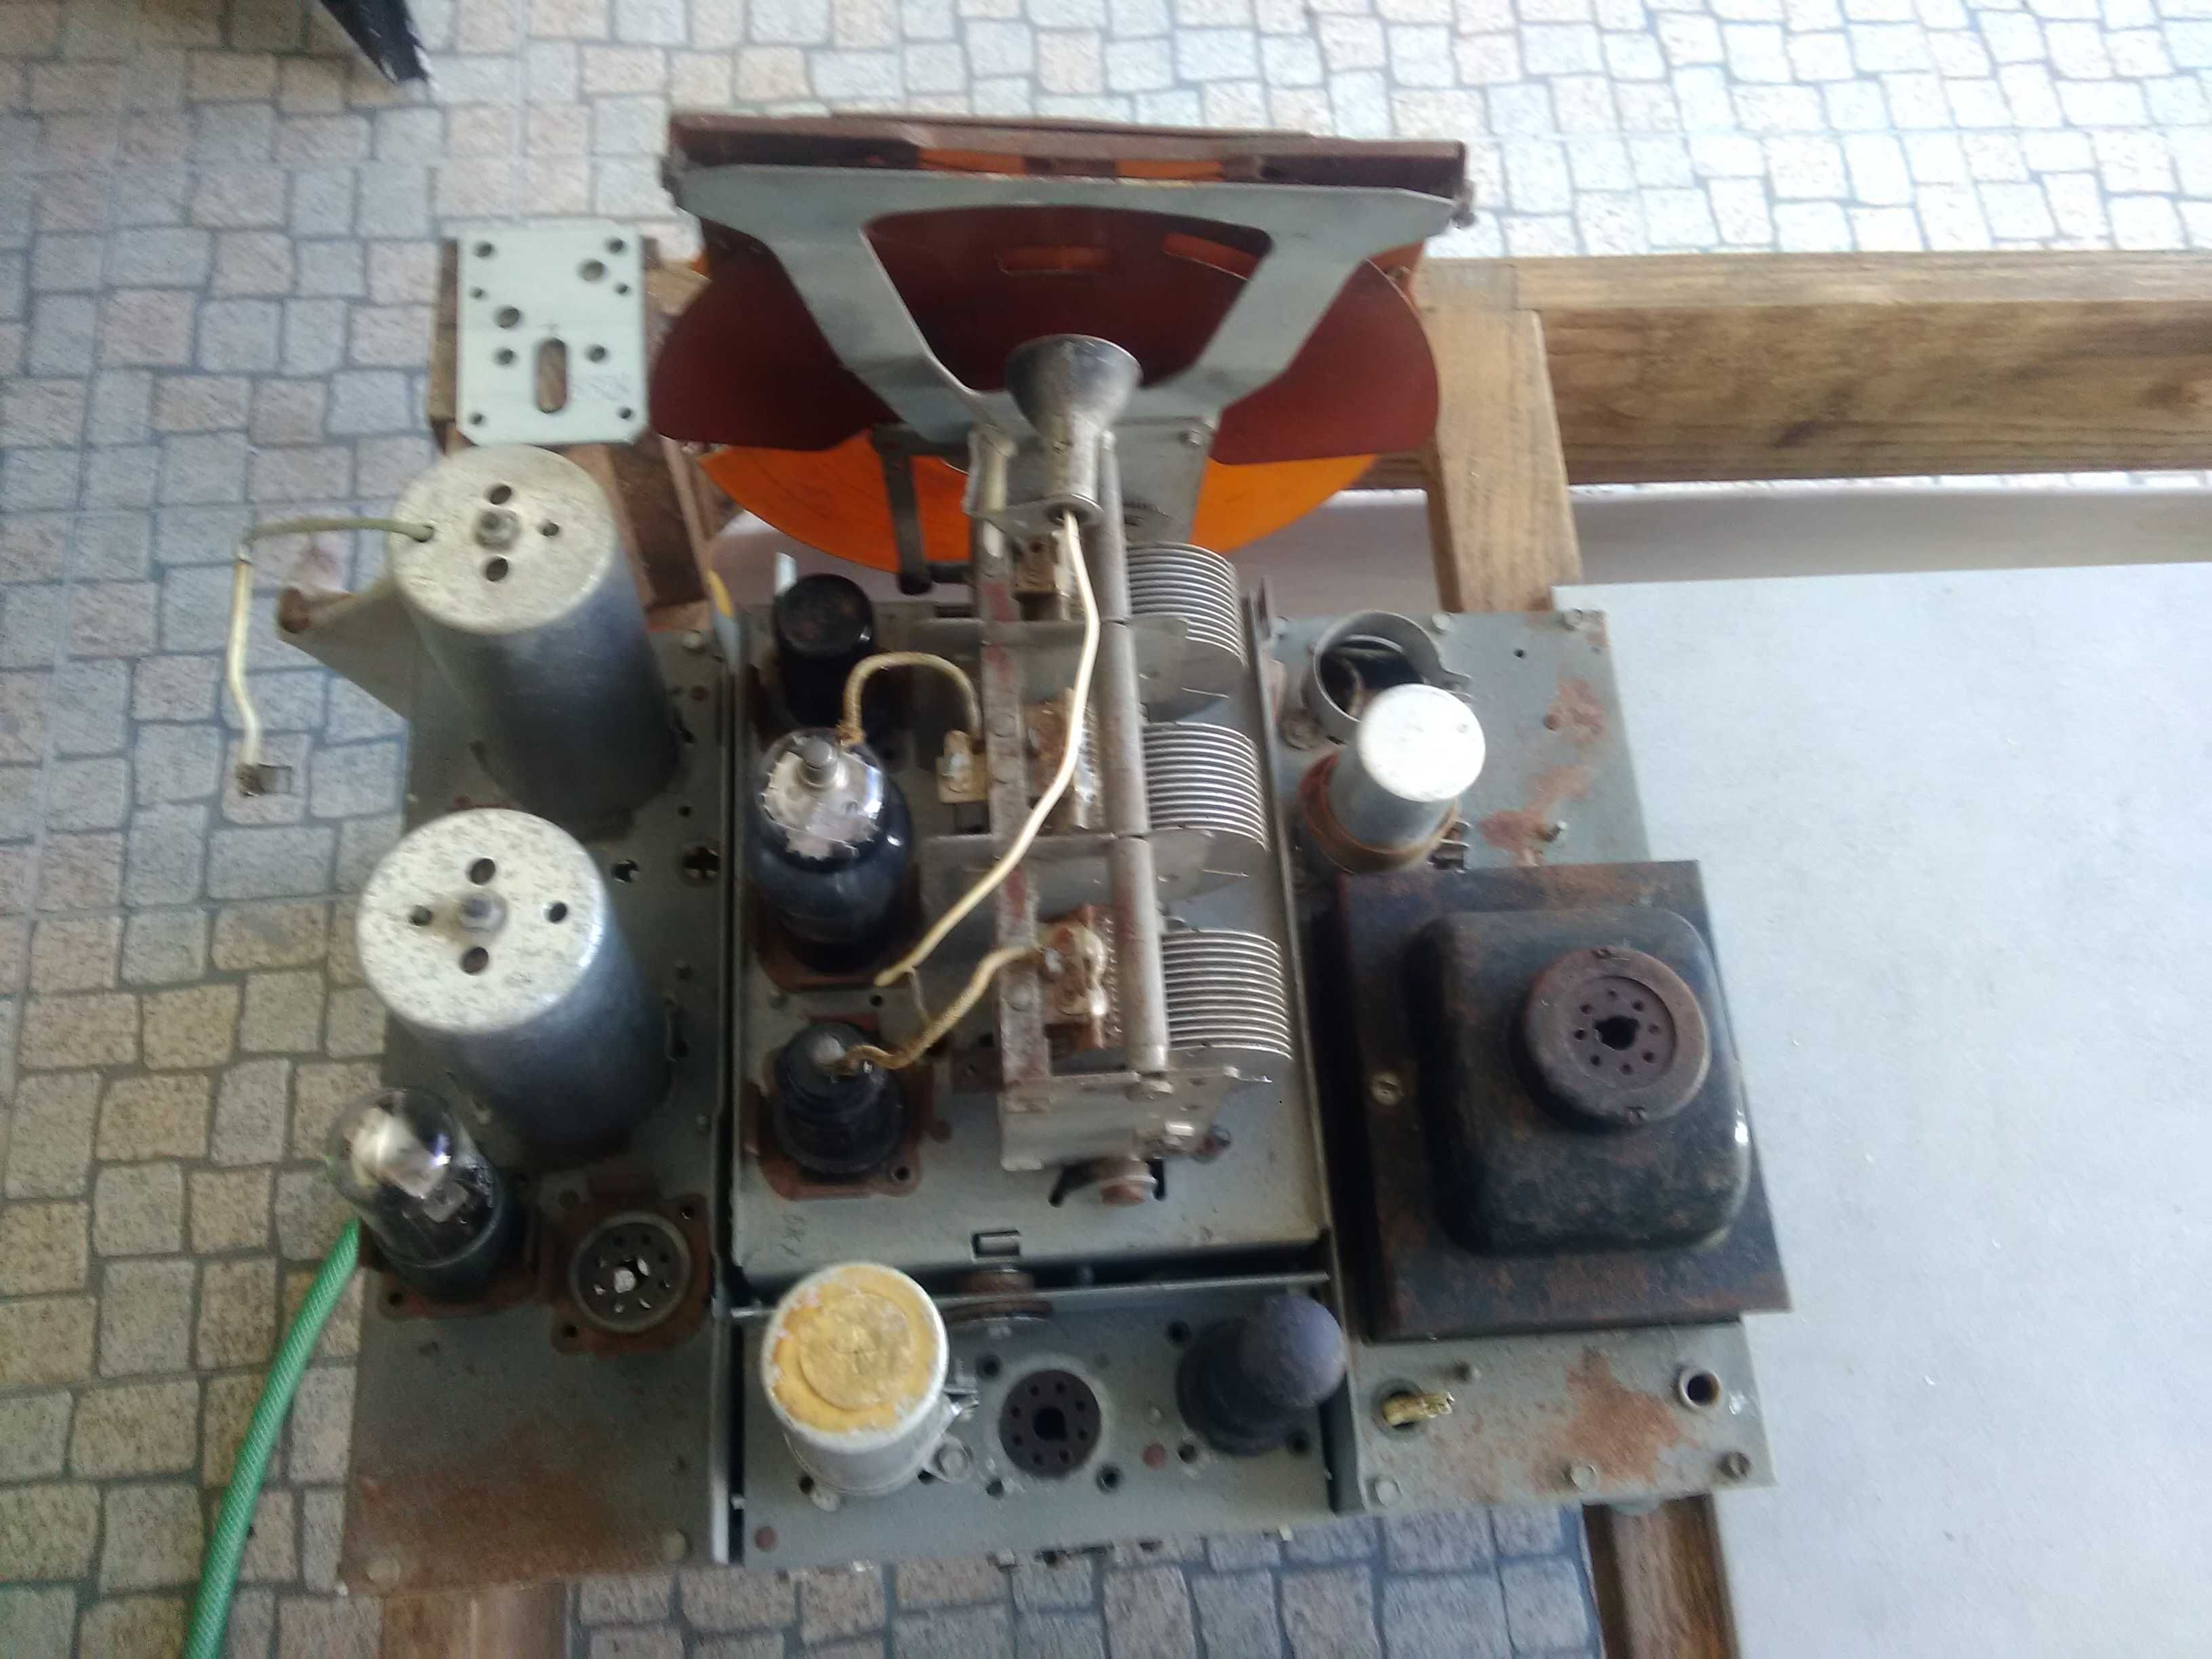 Reparações de Rádios Antigos a Válvulas ou Transístores